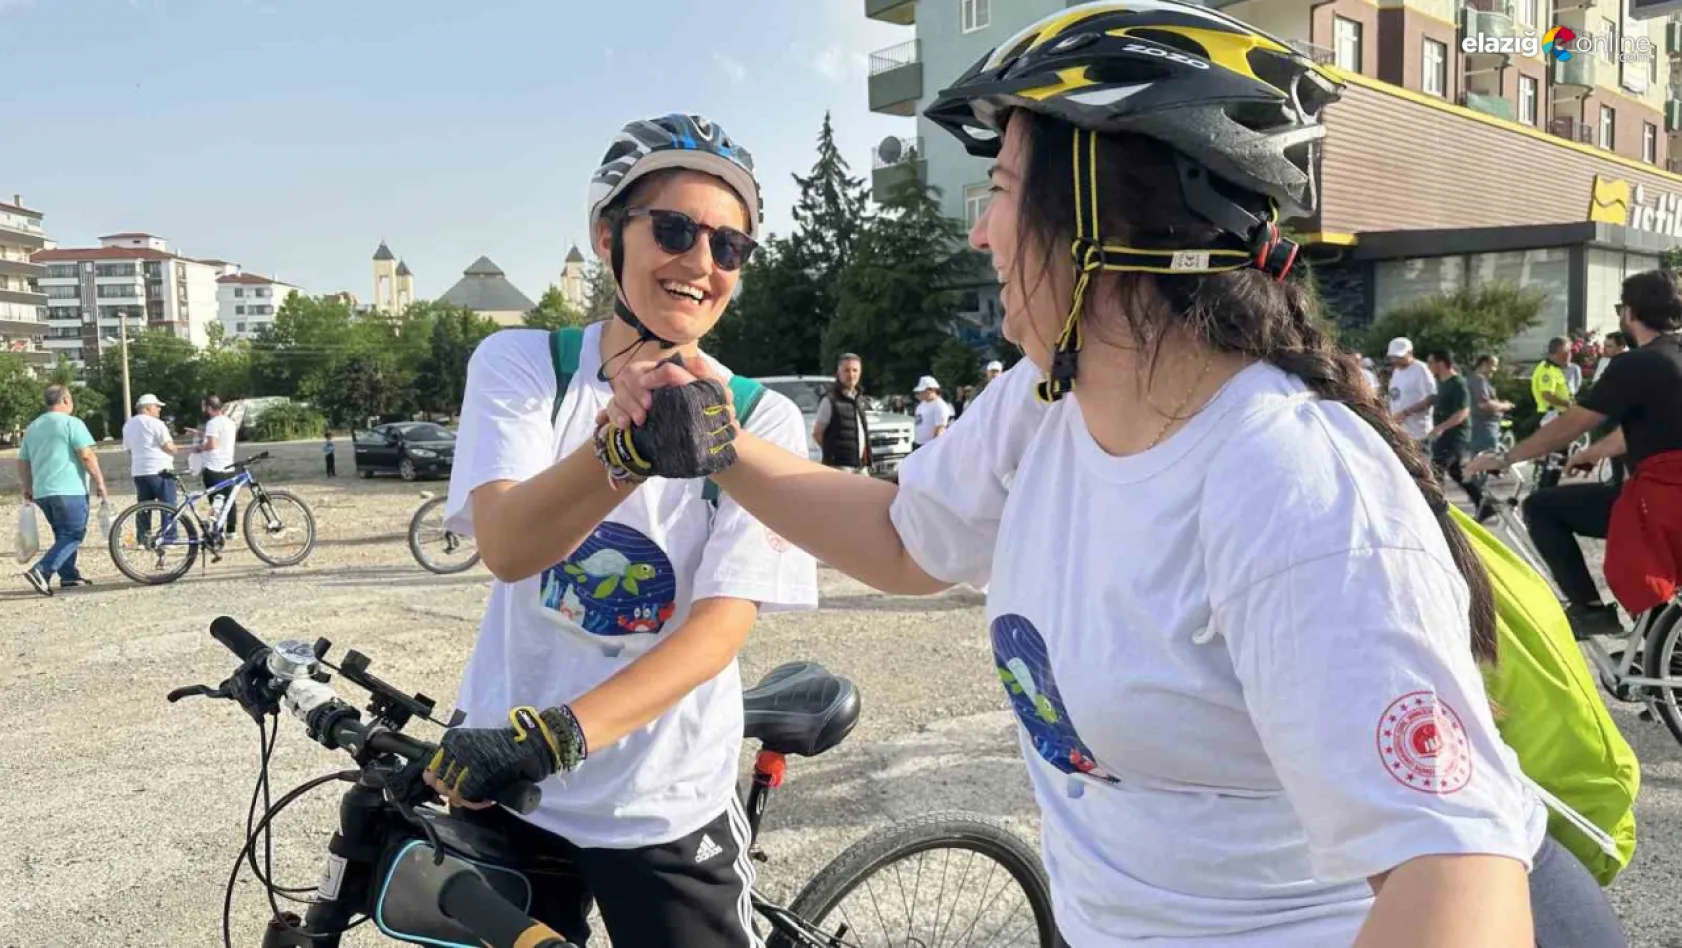 Elazığ'da Bisiklet Günü etkinliği kutlandı